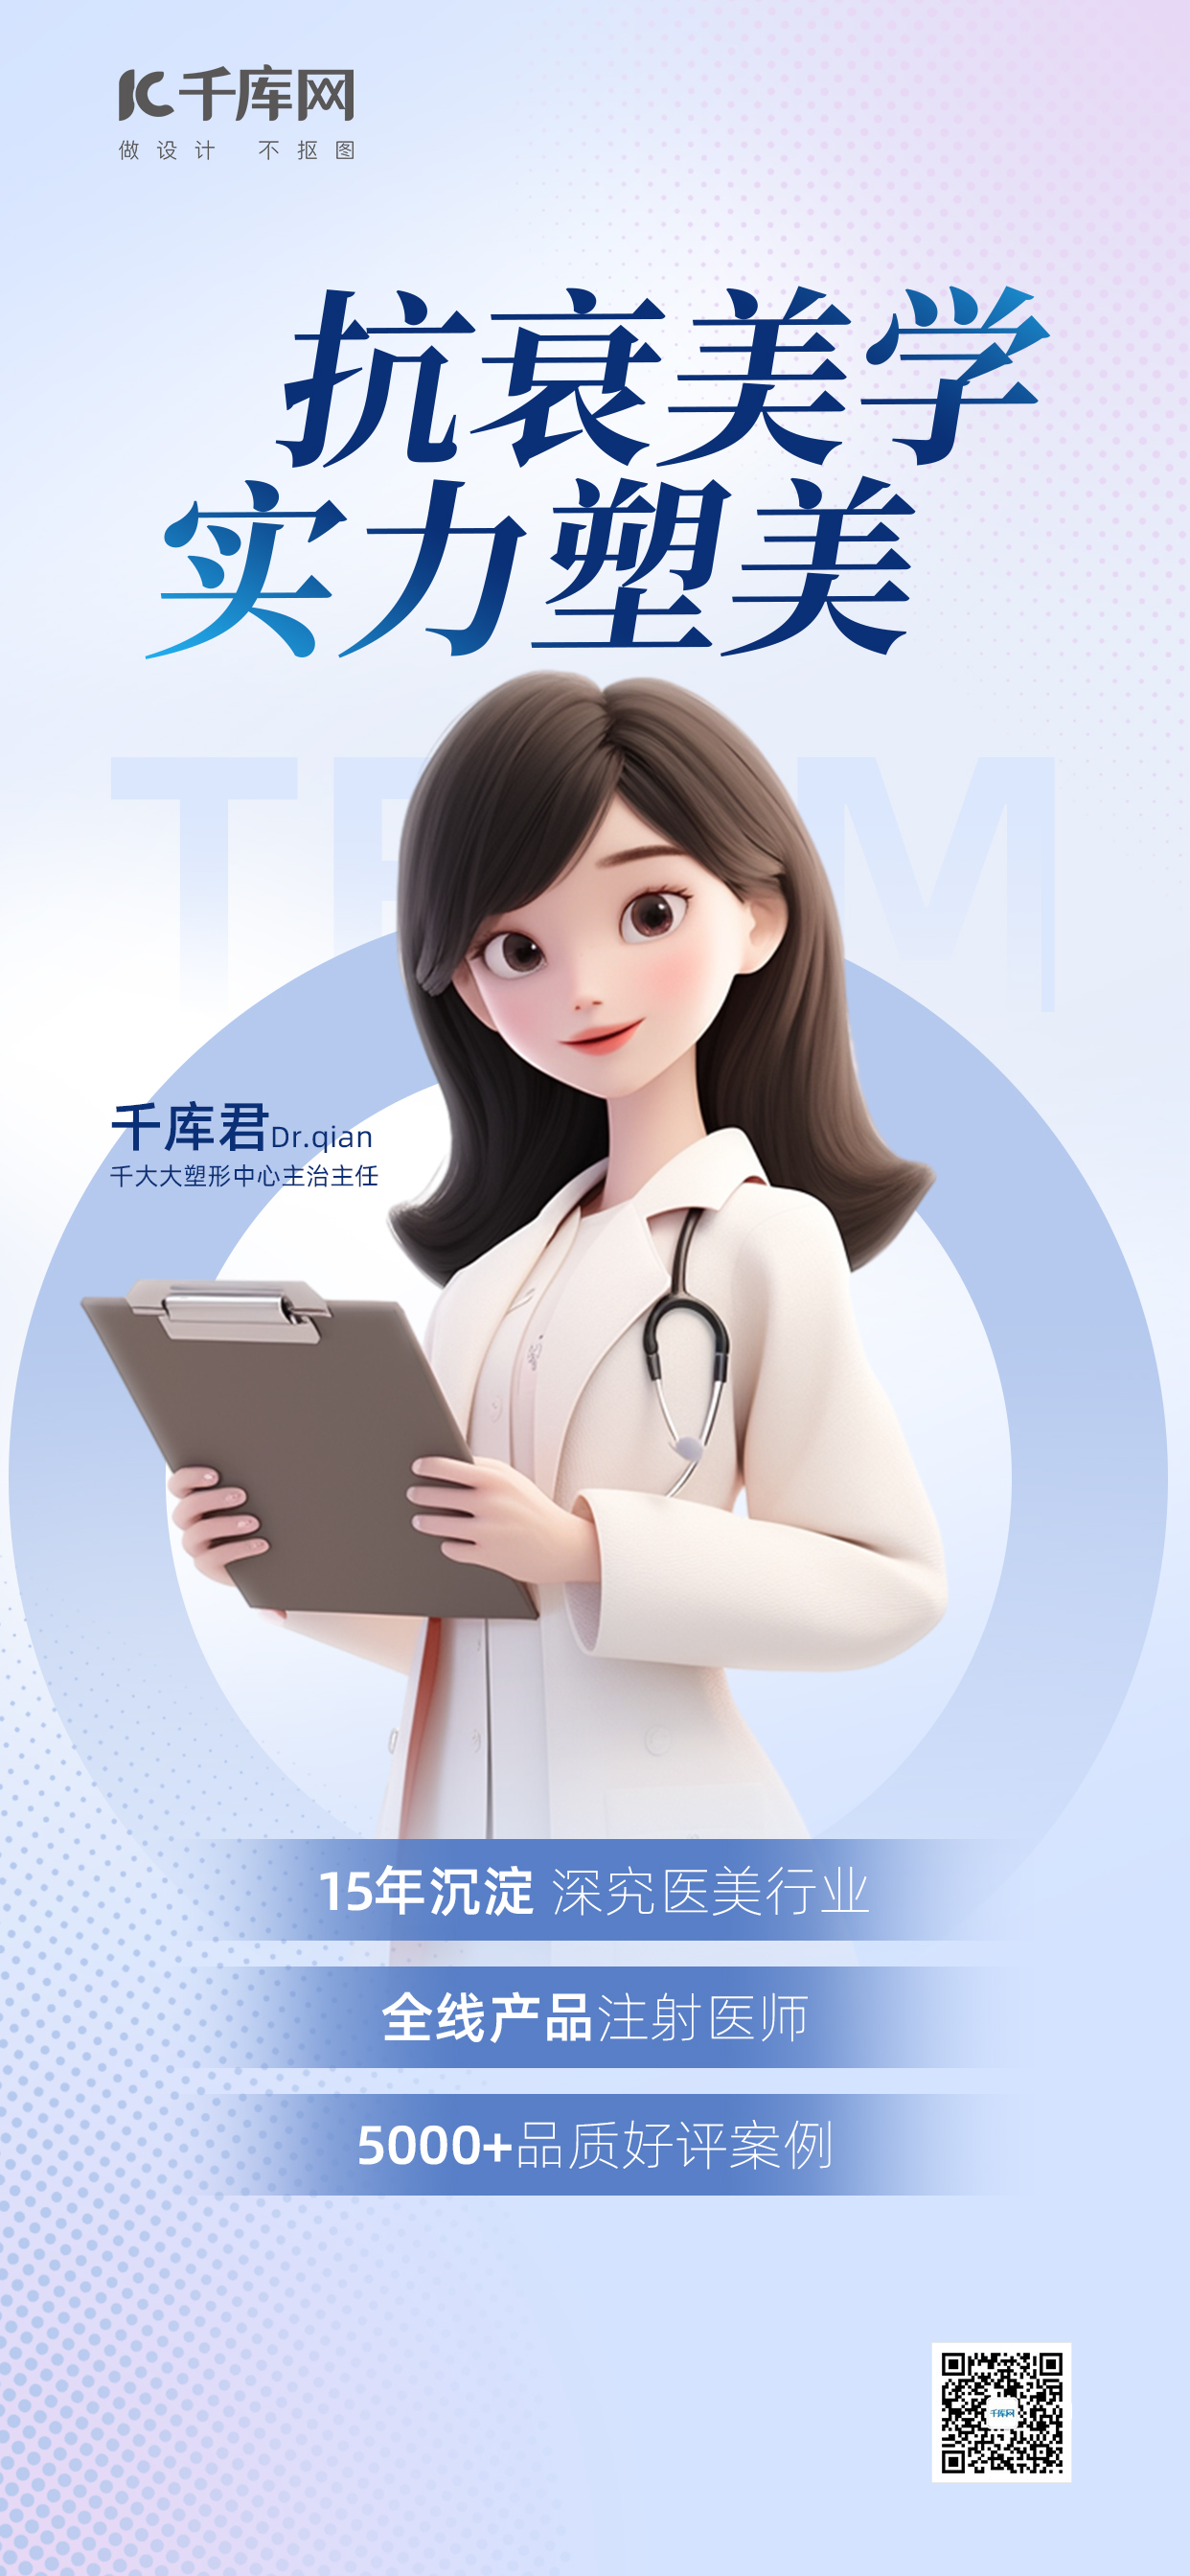 医美医生形象女性浅蓝色渐变广告宣传海报图片